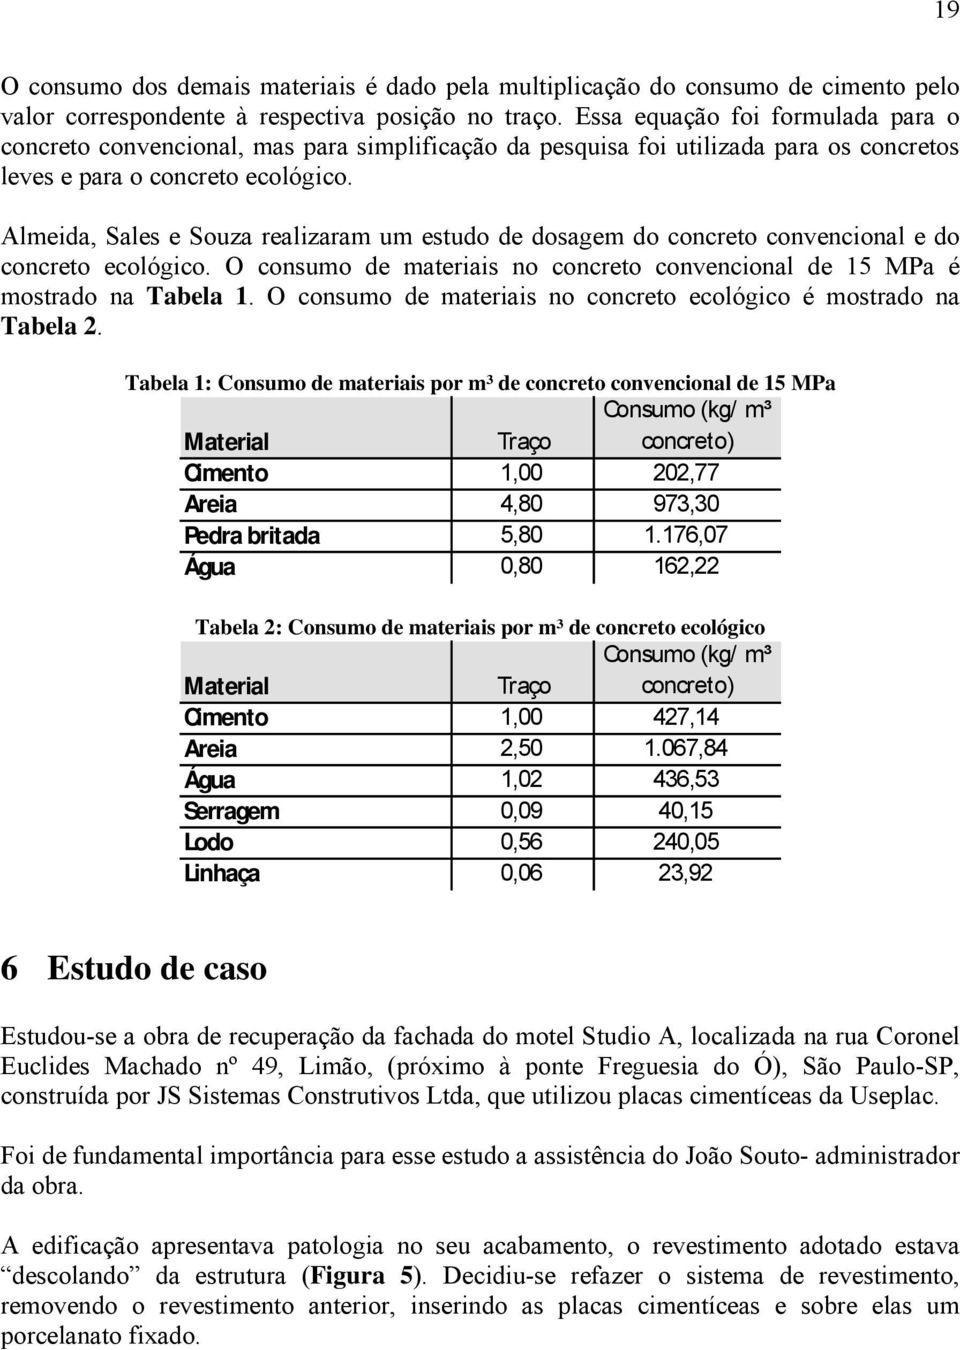 Almeida, Sales e Souza realizaram um estudo de dosagem do concreto convencional e do concreto ecológico. O consumo de materiais no concreto convencional de 15 MPa é mostrado na Tabela 1.